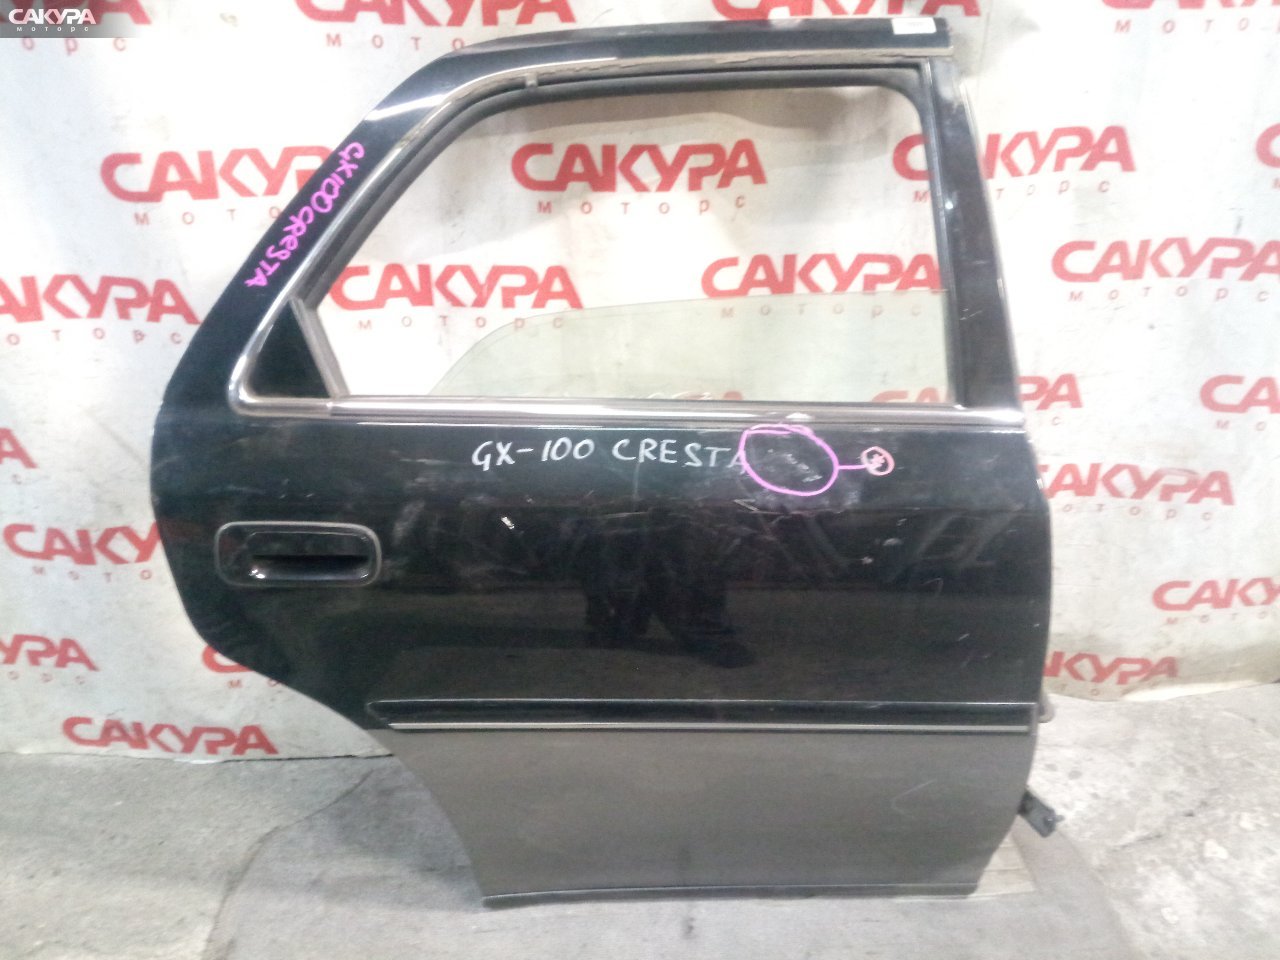 Дверь боковая задняя правая Toyota Cresta GX100: купить в Сакура Кемерово.